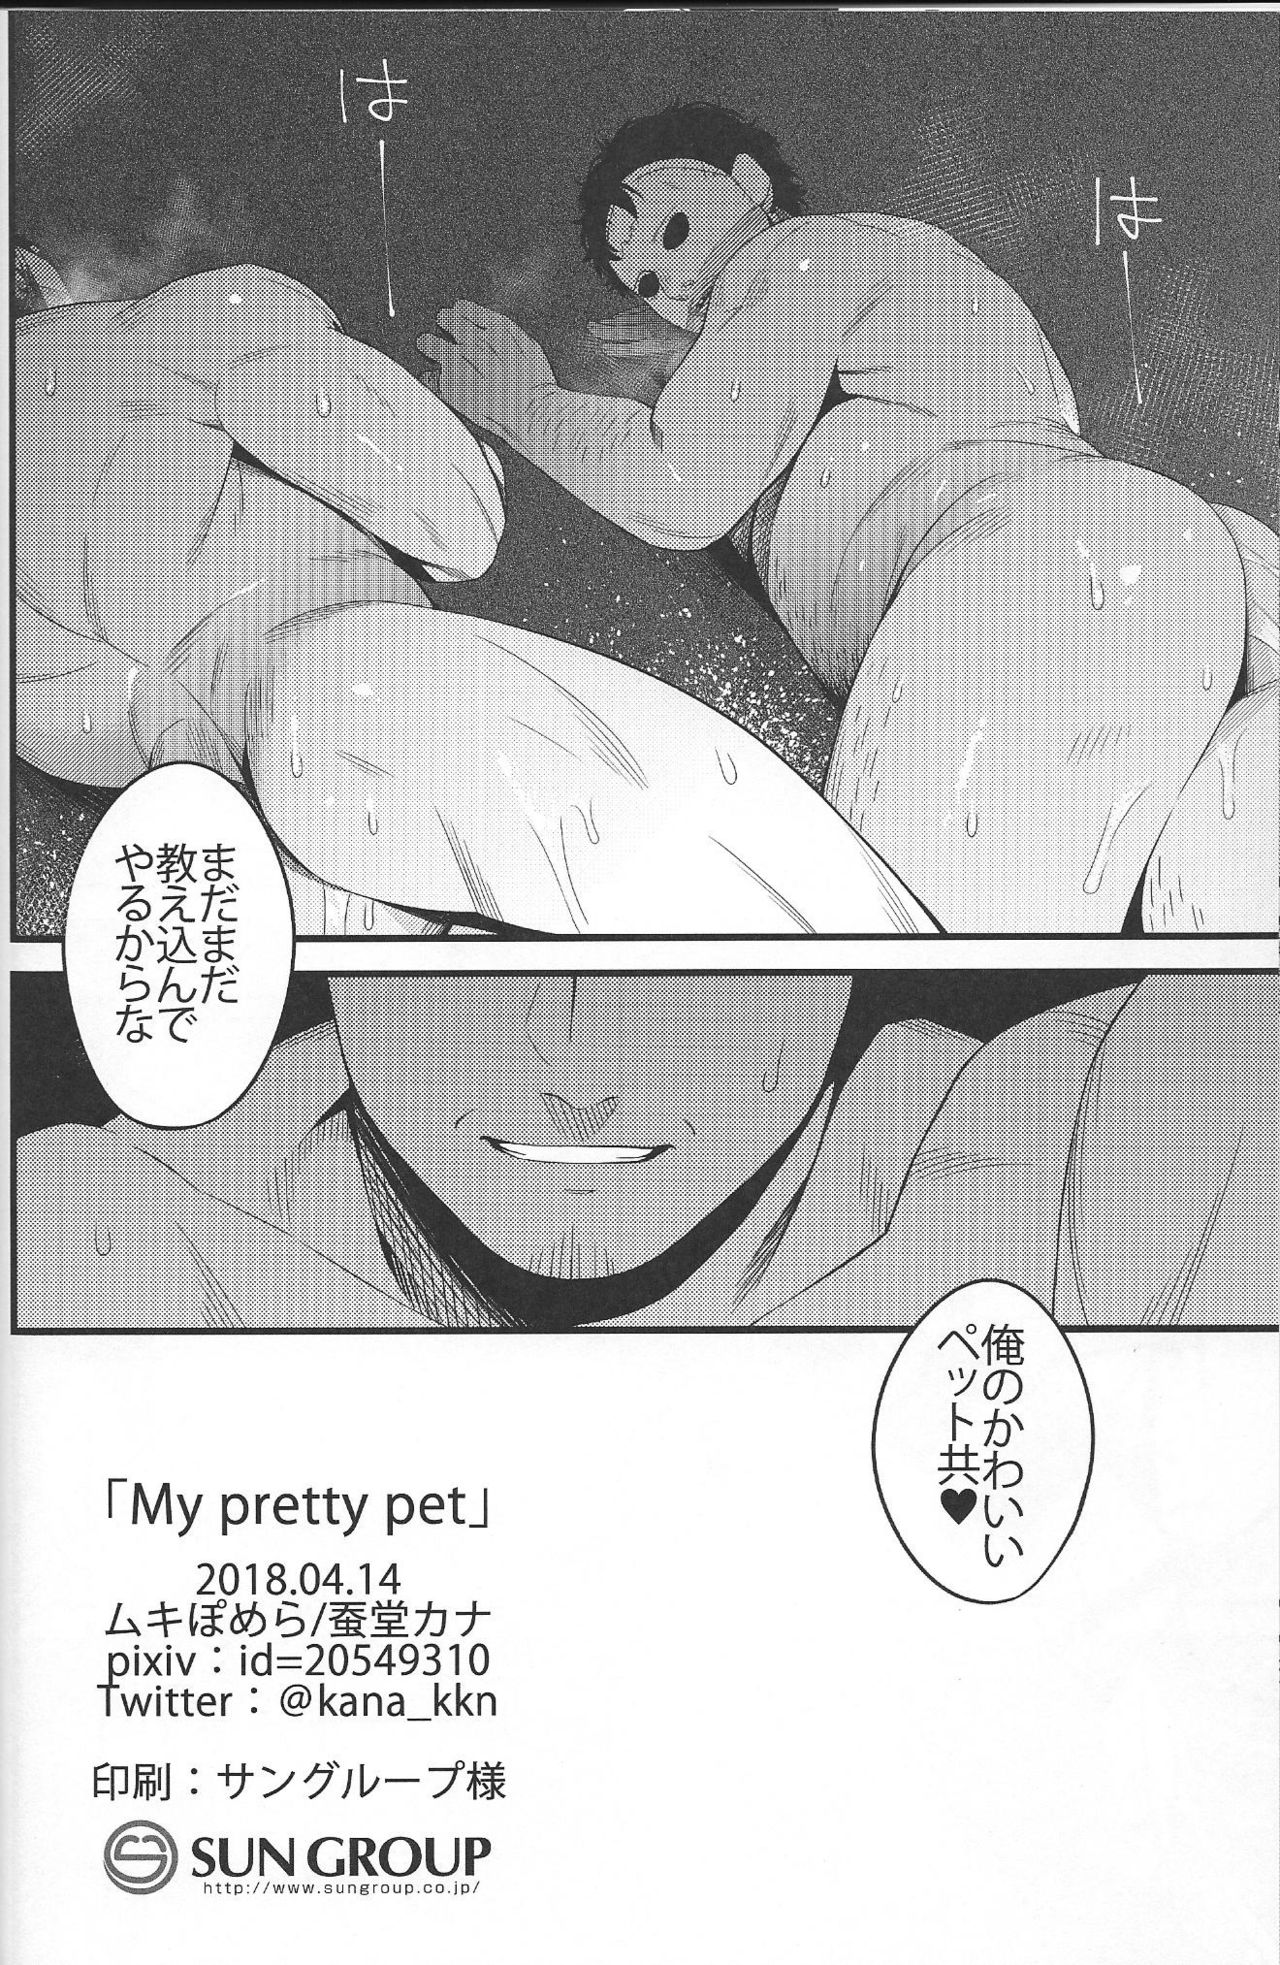 (野郎フェス2018) [ムキぽめら (蚕堂カナ)] My pretty pet (13日の金曜日)